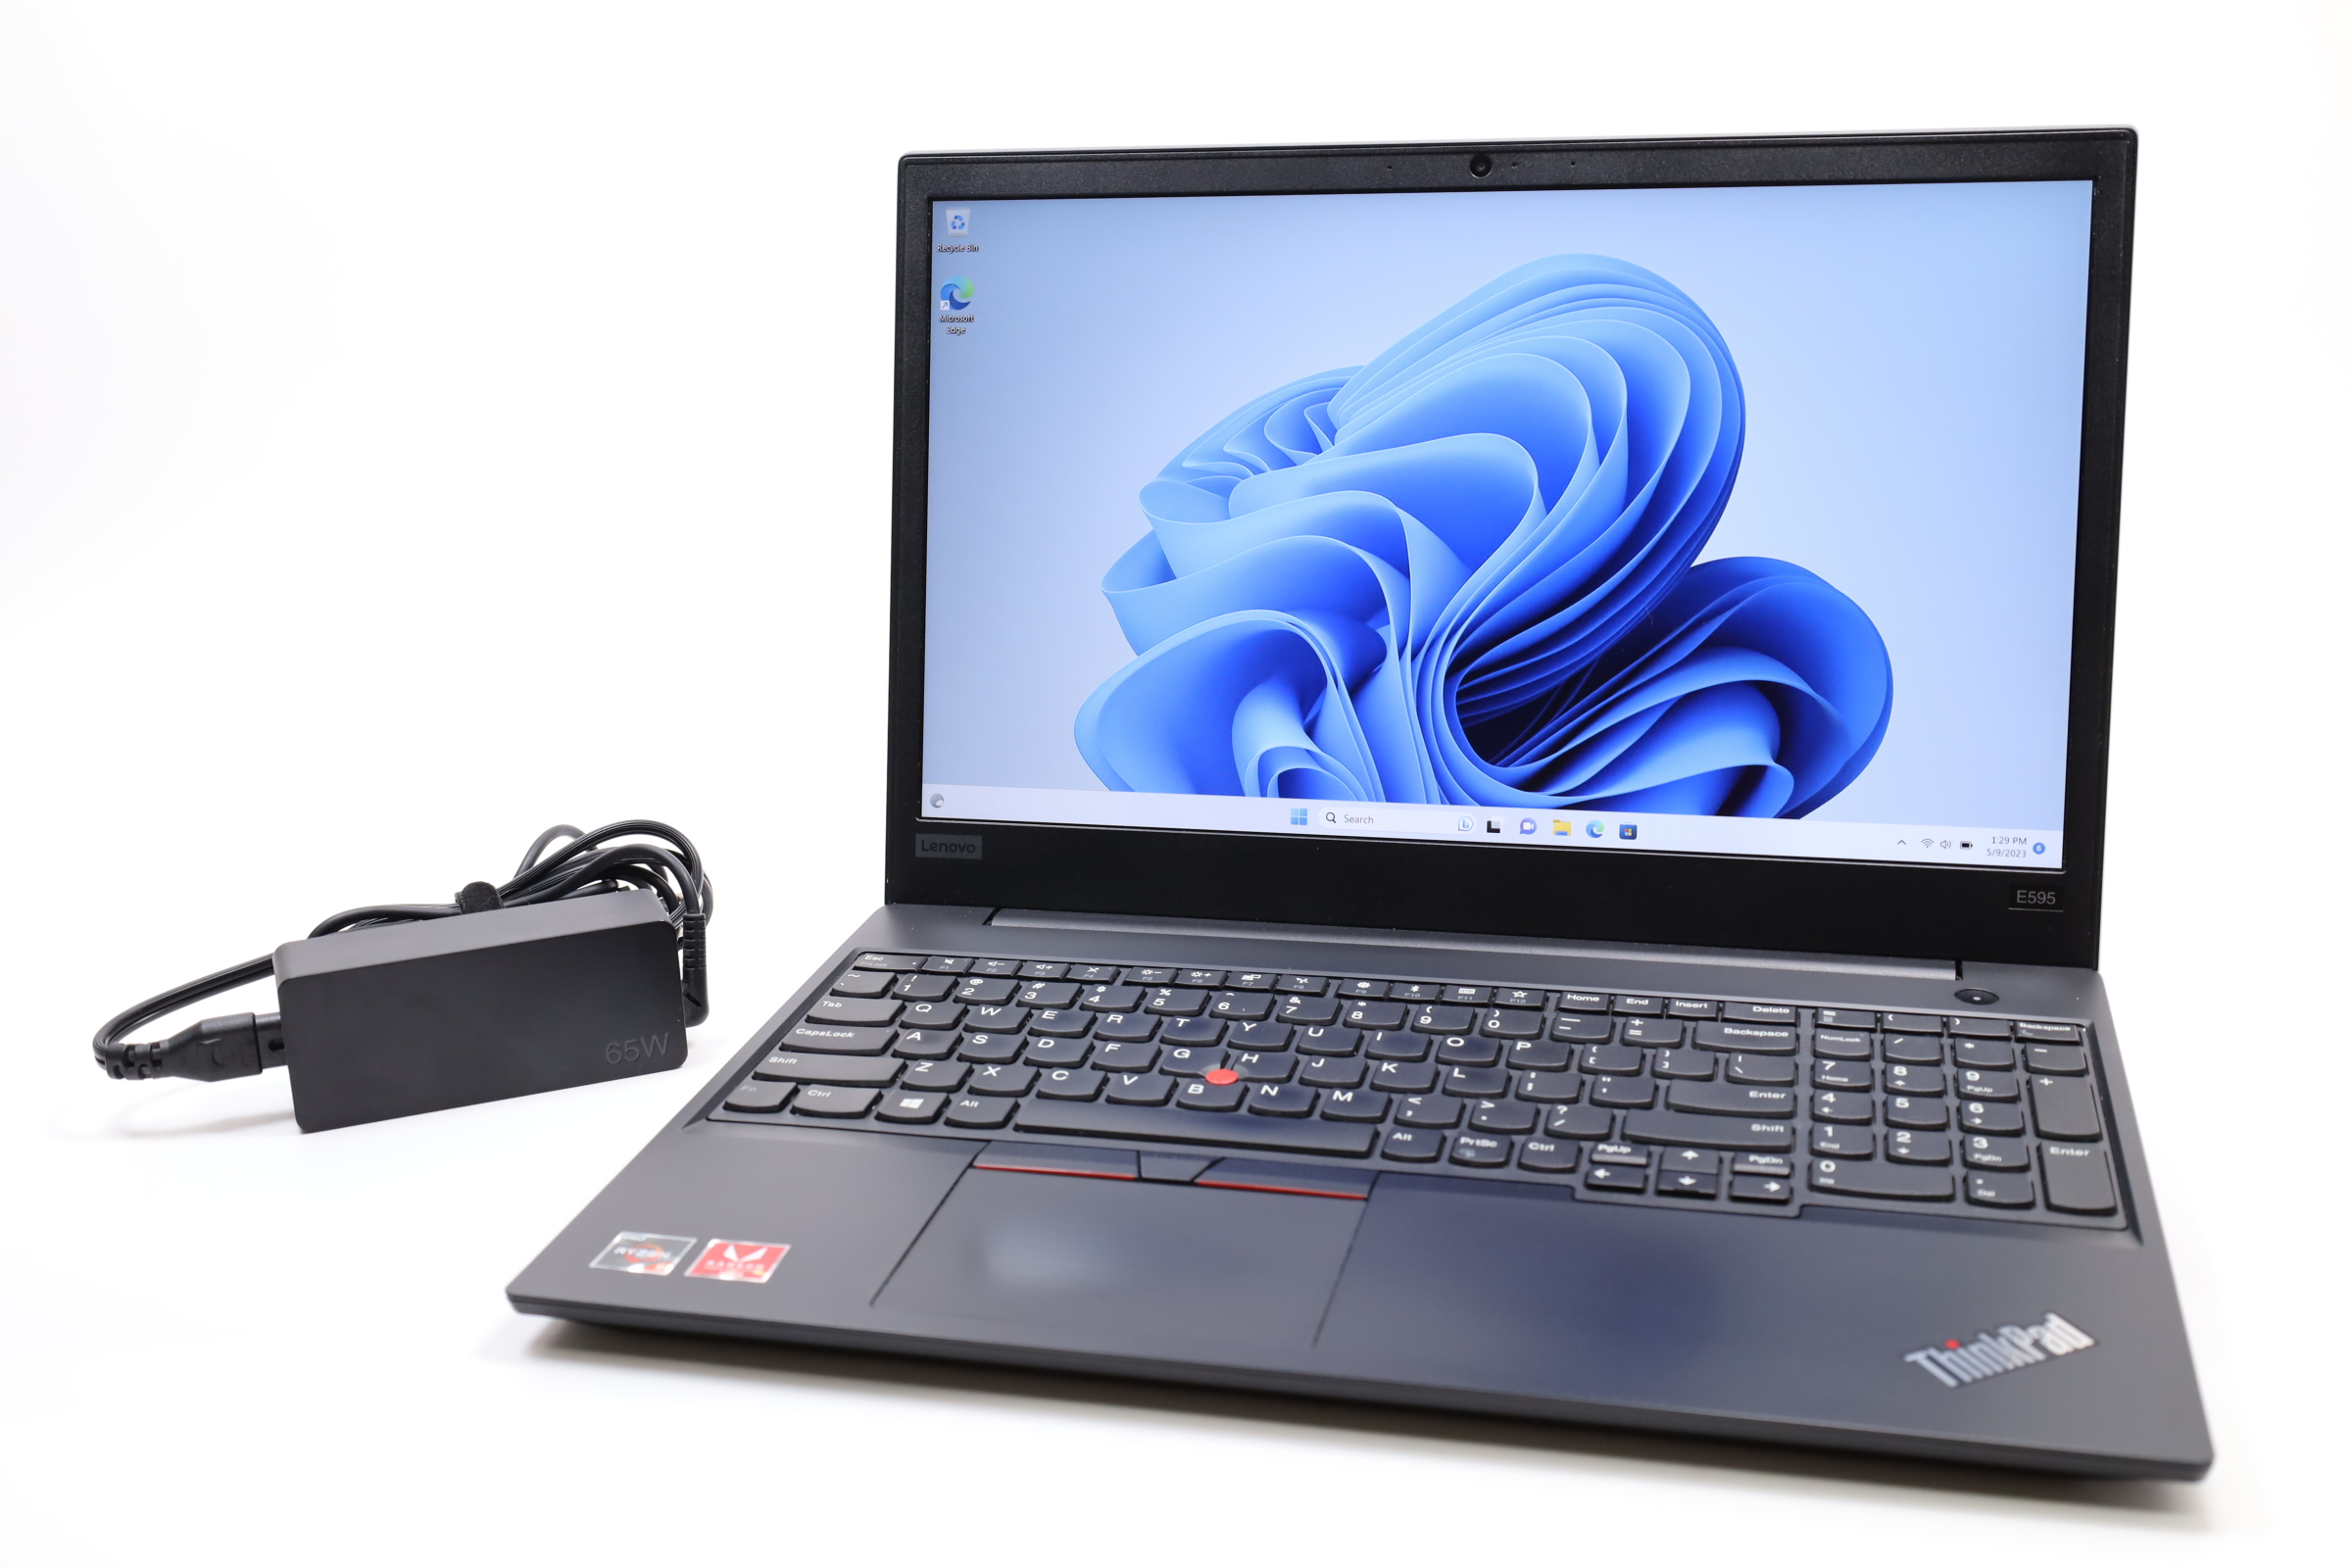 Lenovo ThinkPad E595 AMD Ryzen 5 3500U 2.1GHz 8GB RAM 256GB SSD